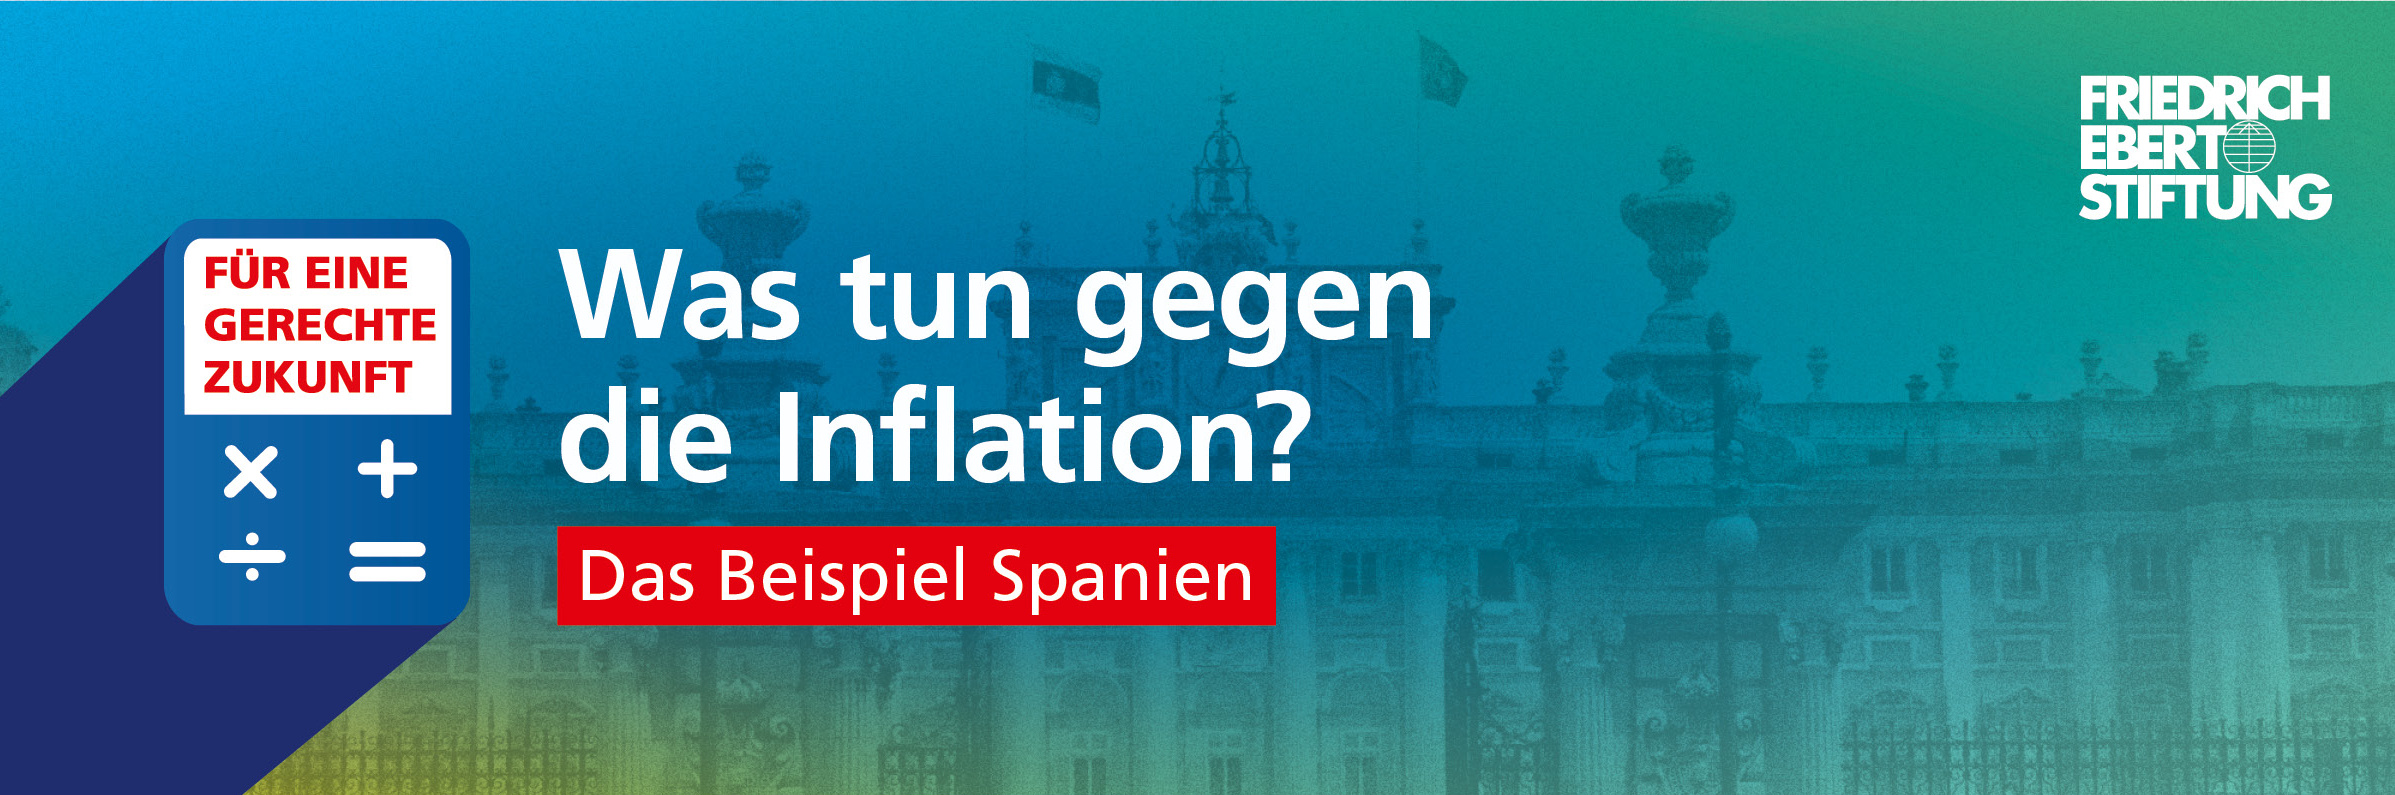 Blau-grün-gelb verwischter Hintergrund. Darauf der weiße Schriftzug "Was tun gegen die Inflation? Das Beispiel Spanien".